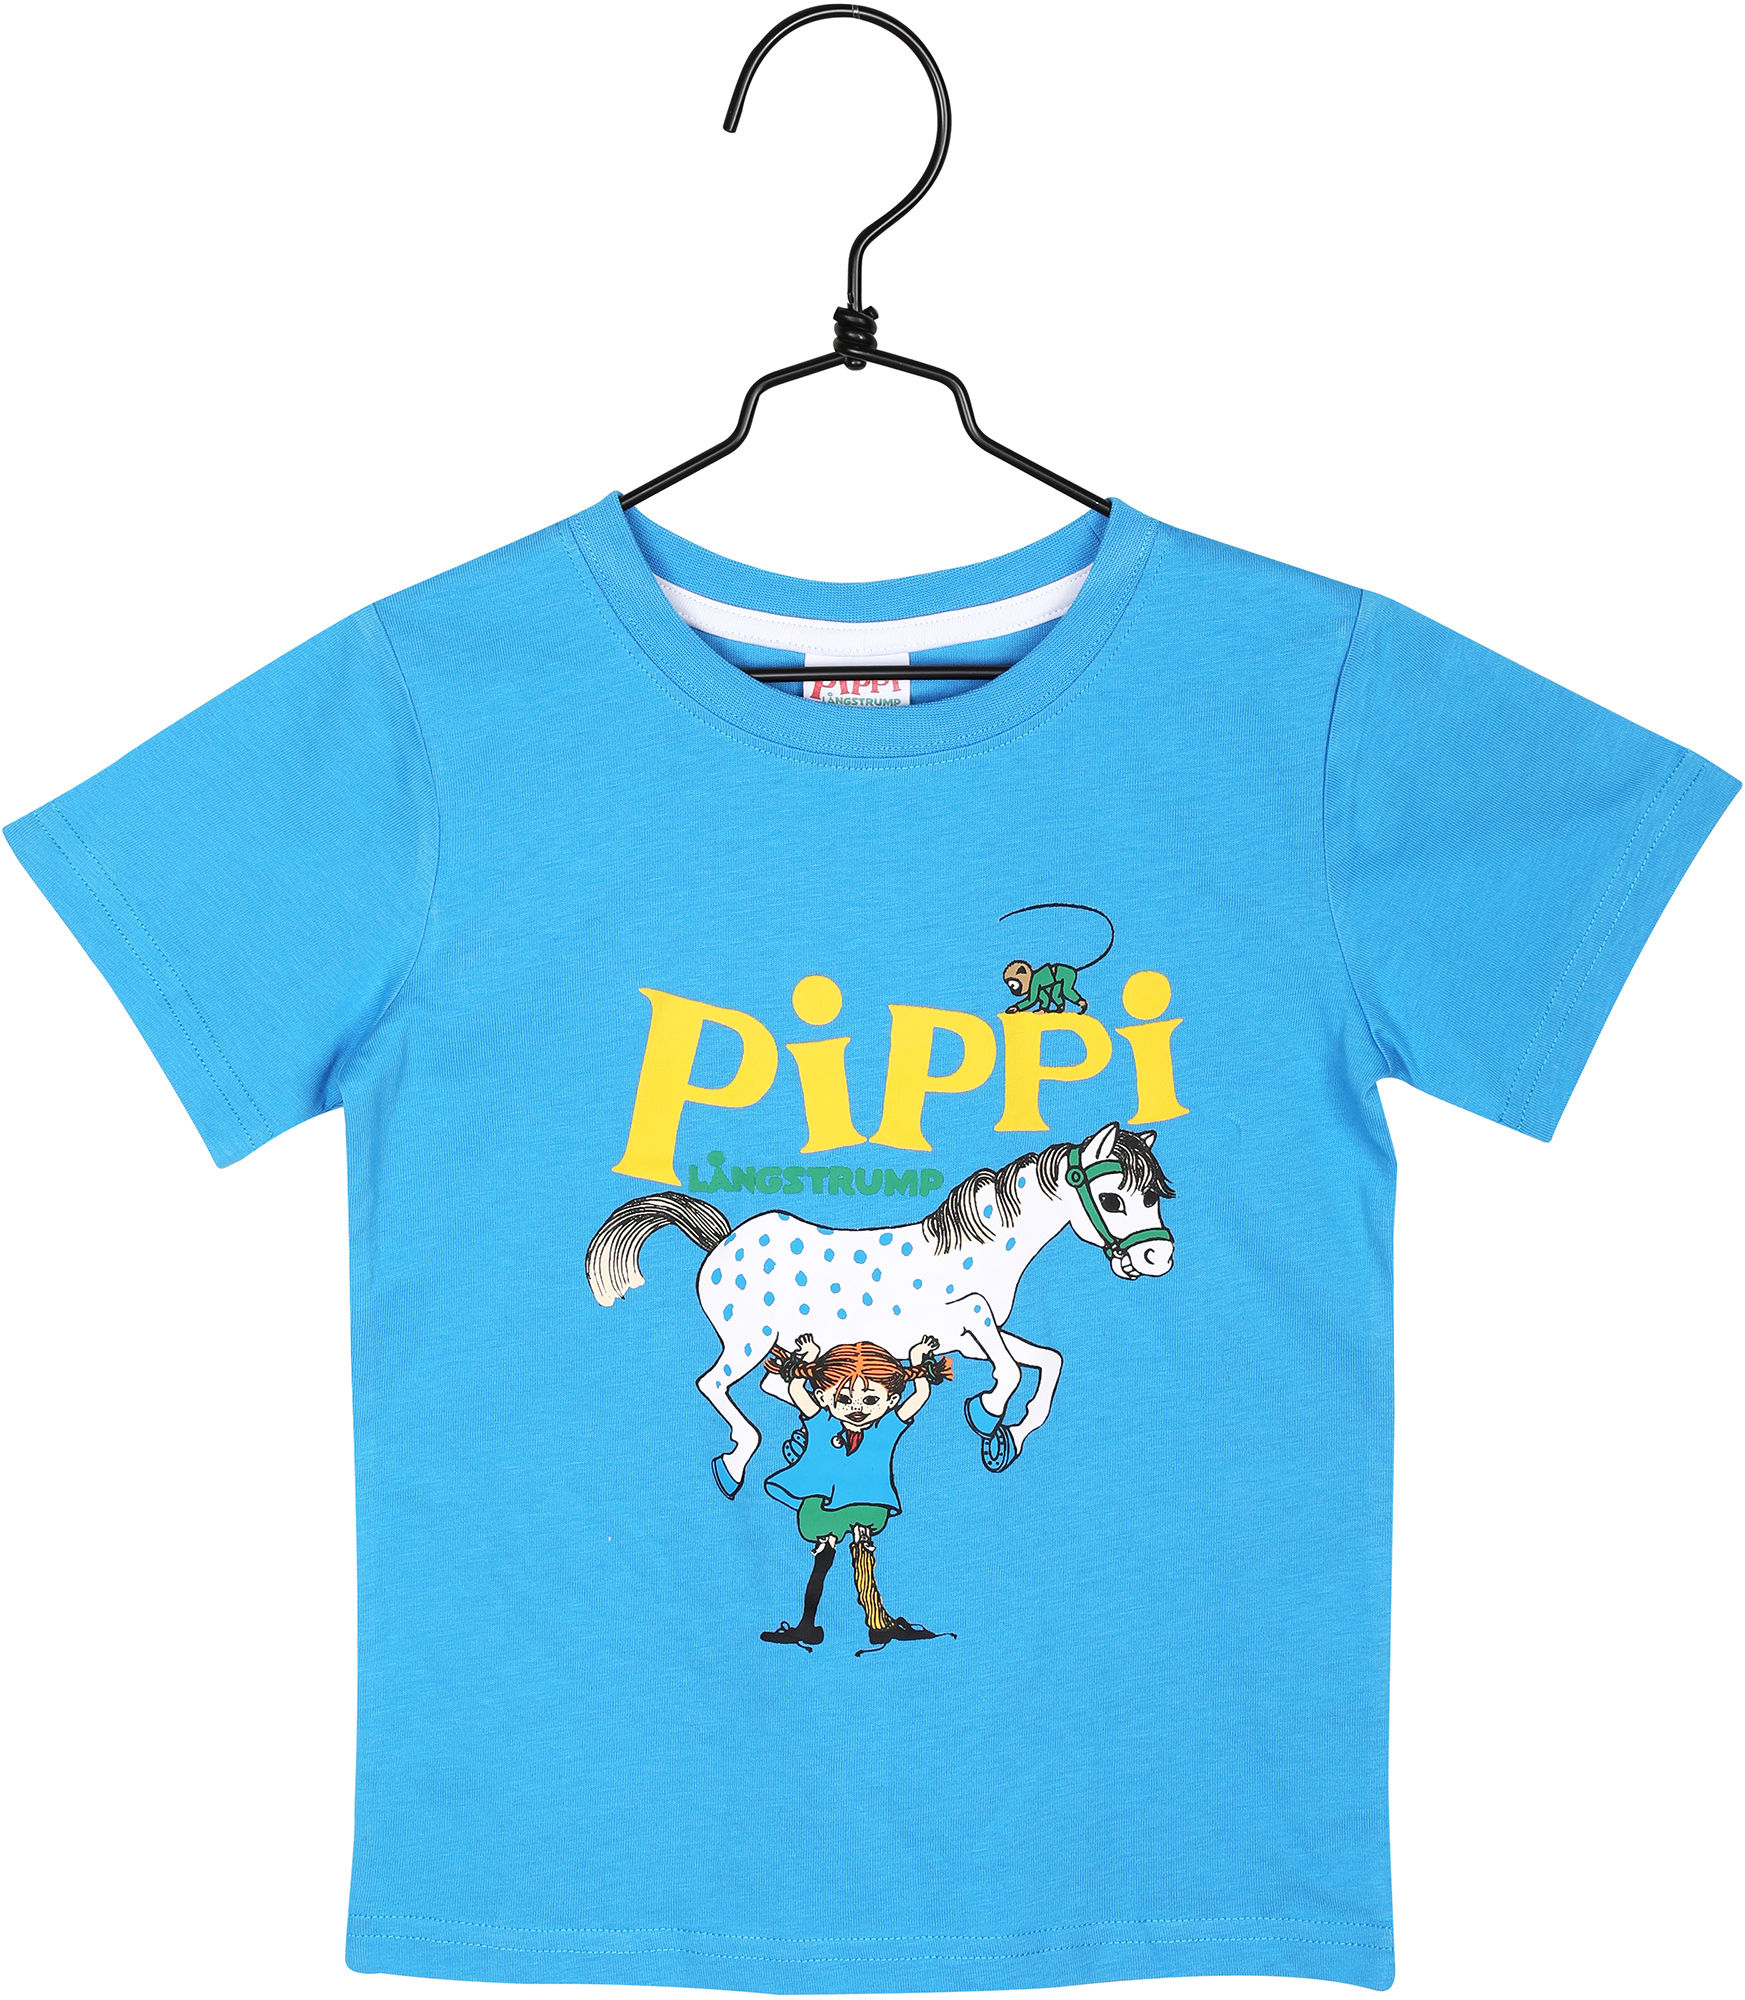 Pippi T-Shirt, Blå, 86